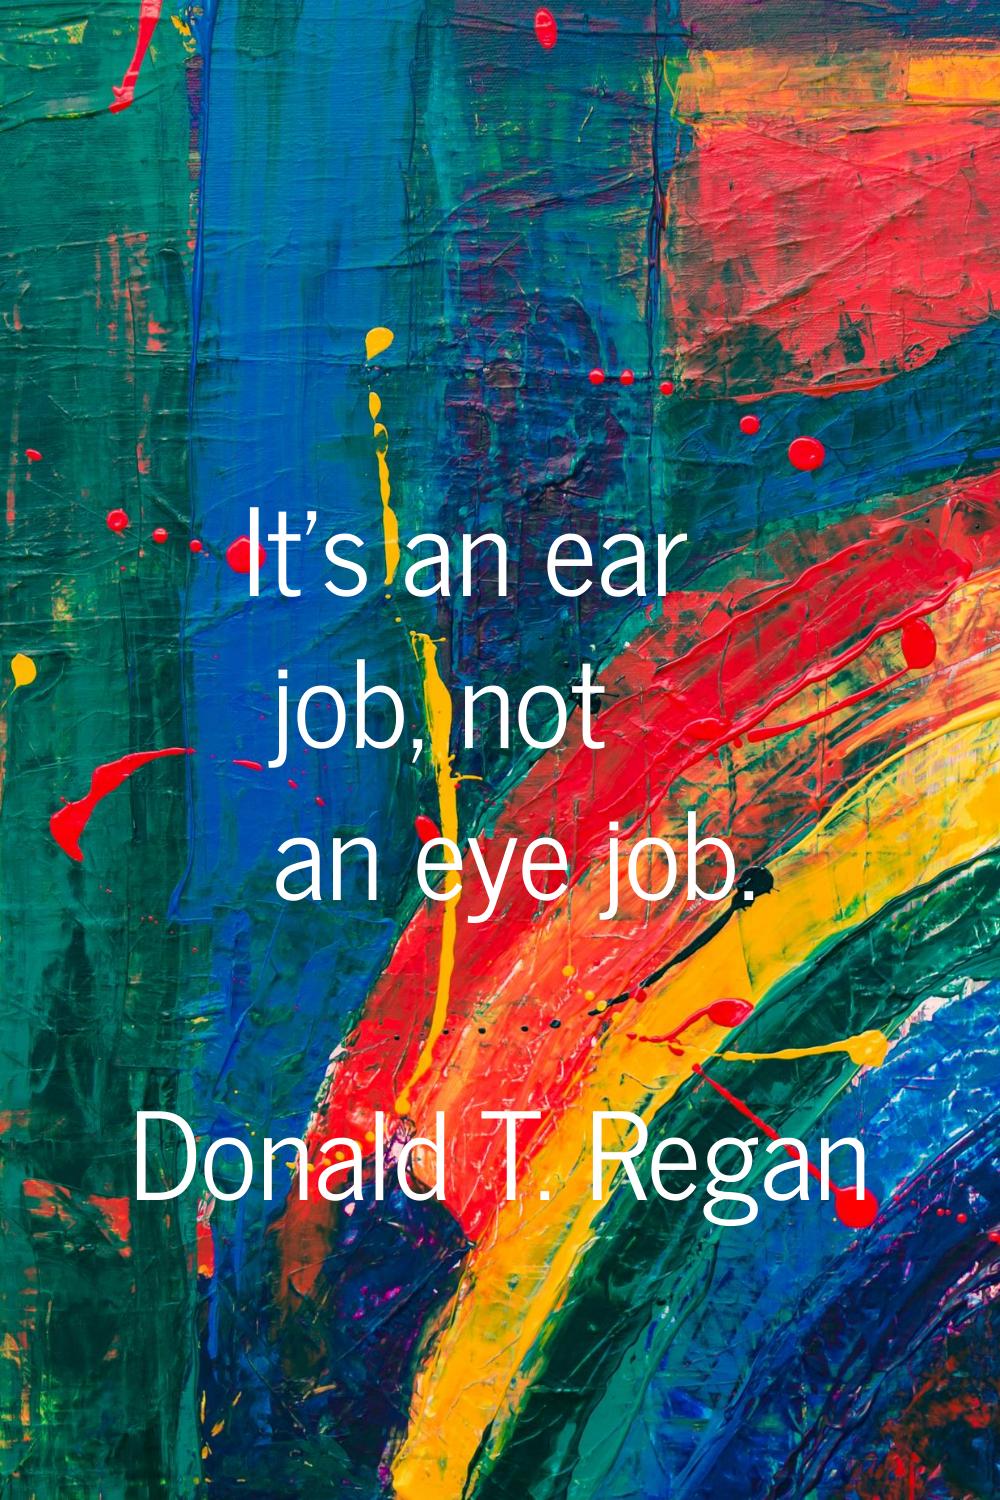 It's an ear job, not an eye job.